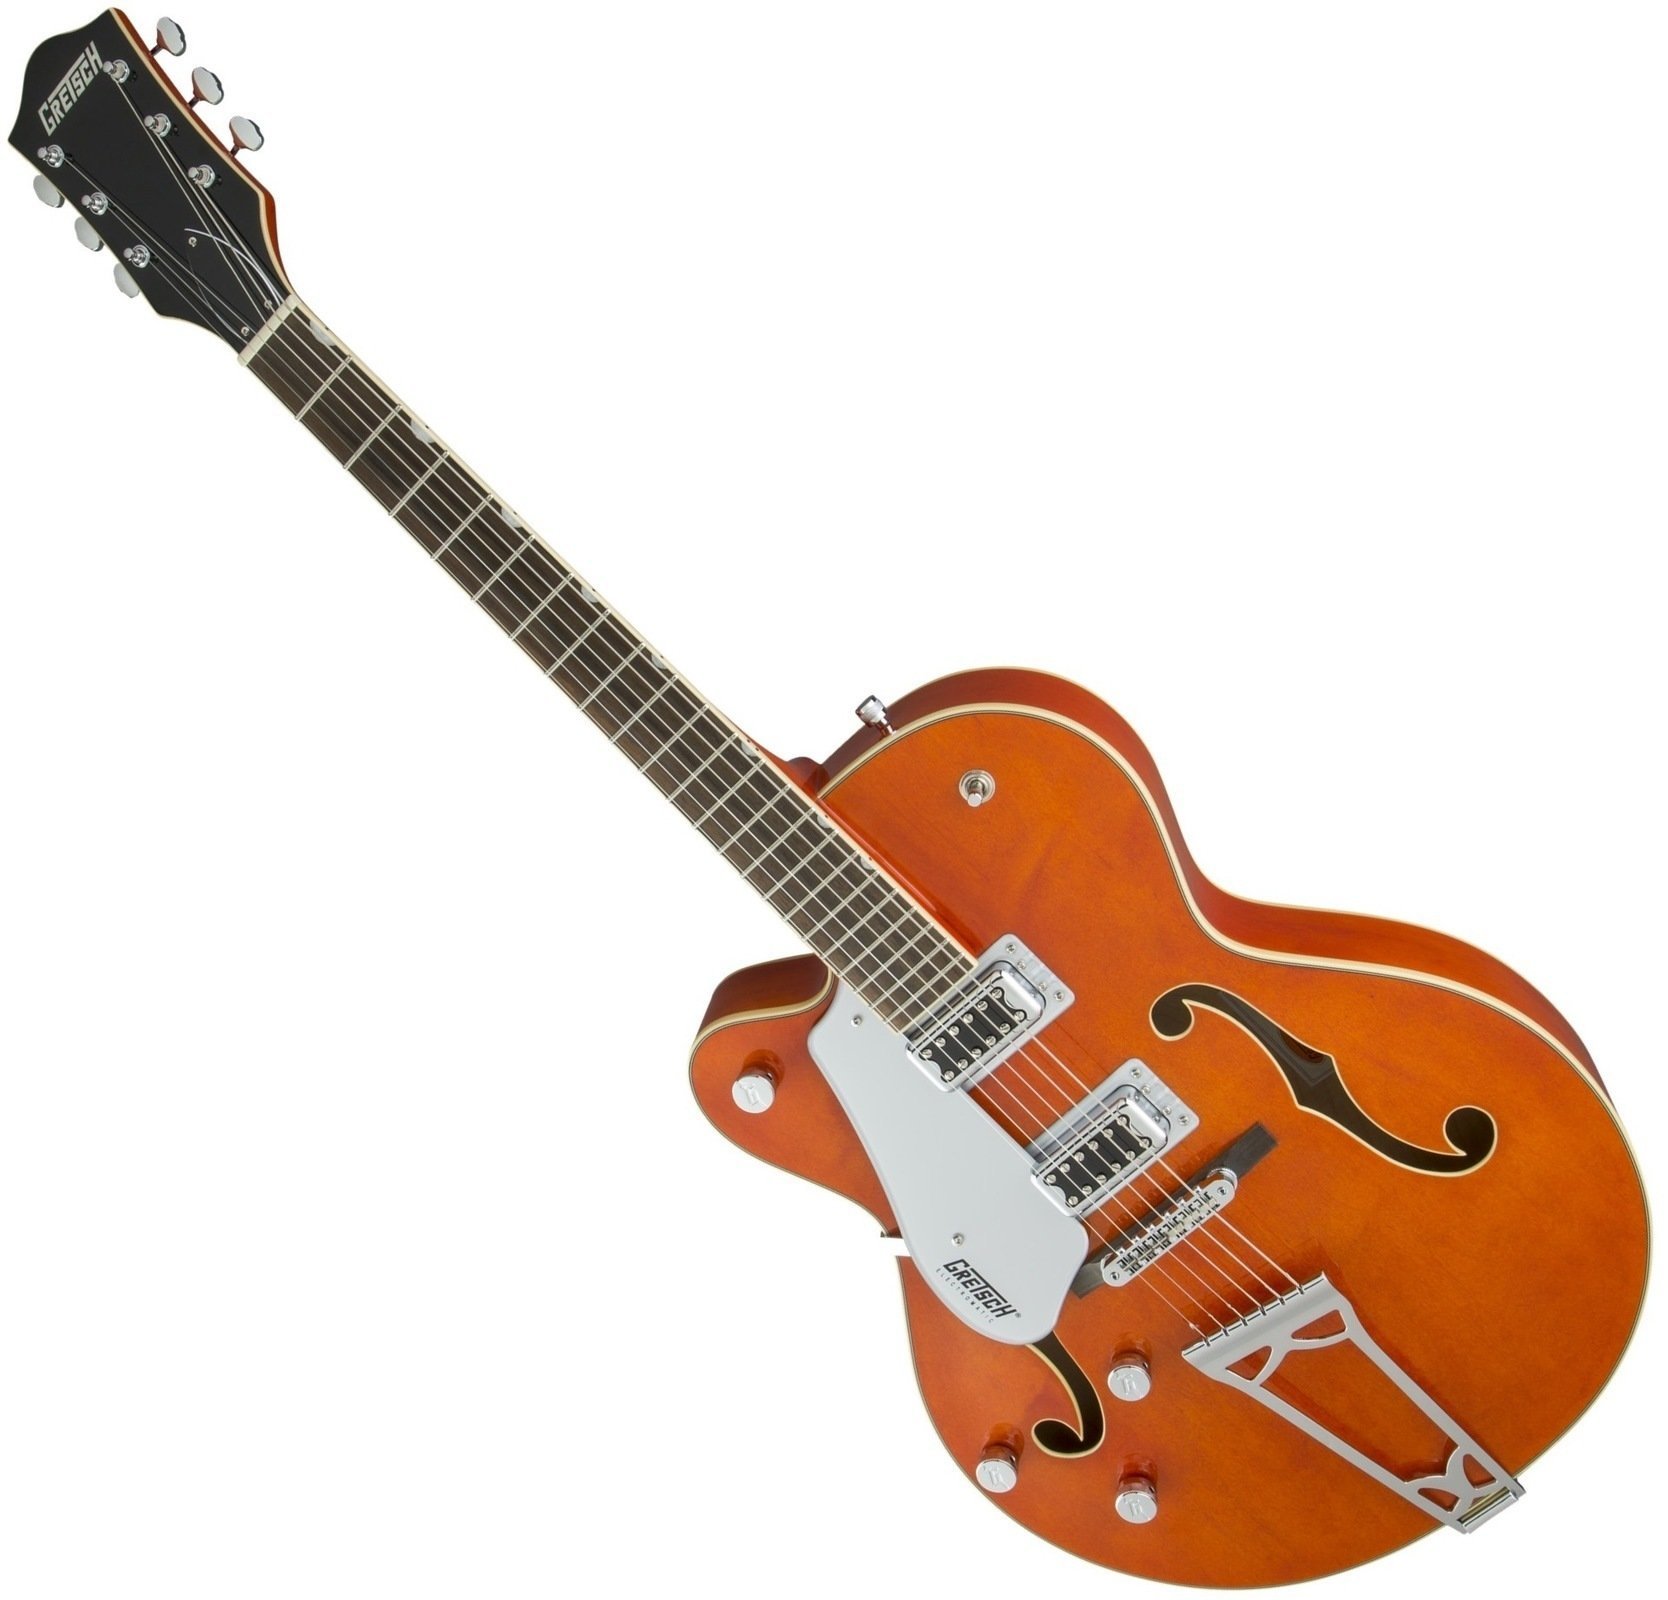 Halbresonanz-Gitarre Gretsch G5420LH Electromatic SC RW Orange Stain